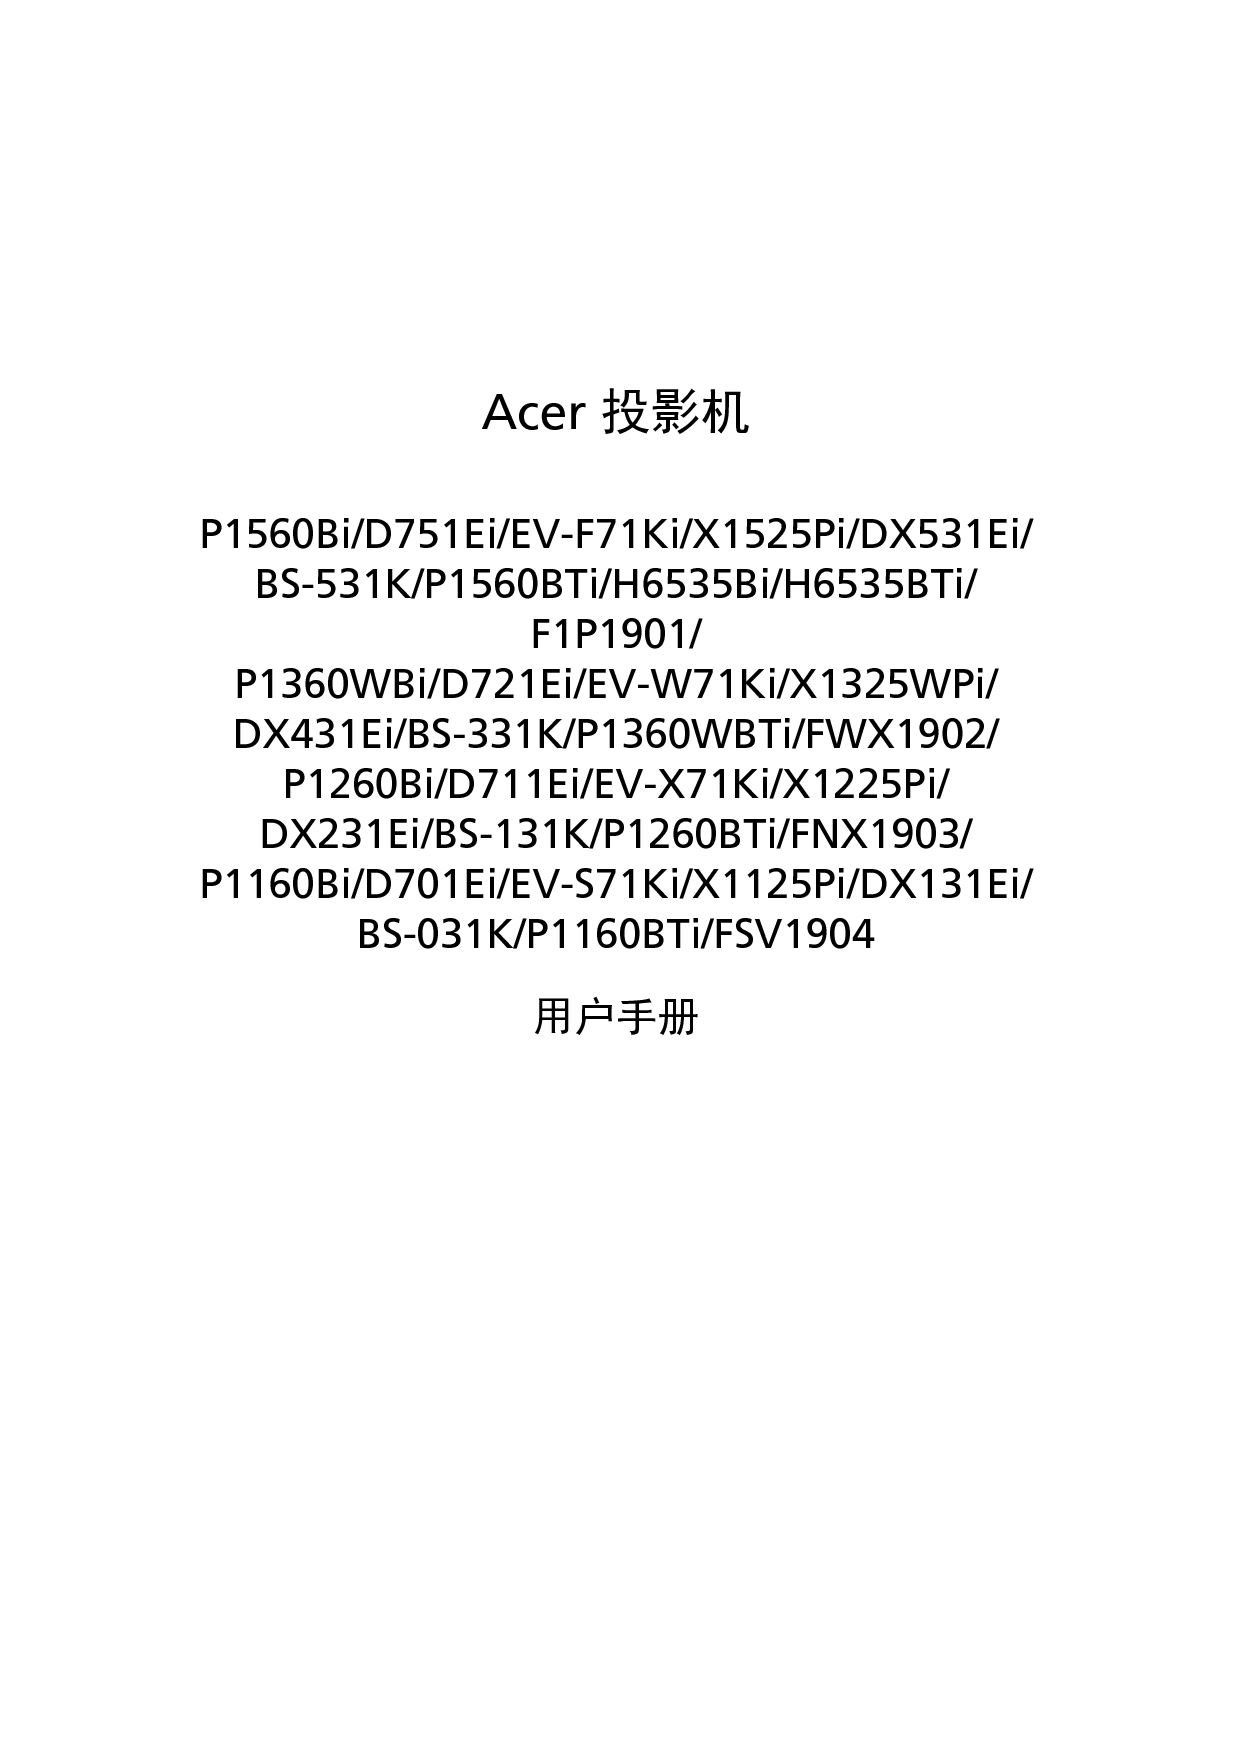 宏碁 Acer BS-031K, D701Ei, DX131Ei, EV-F71Ki, F1P1901, FNX1903, FSV1904, H6535Bi, P1160Bi, X1125Pi 用户指南 封面